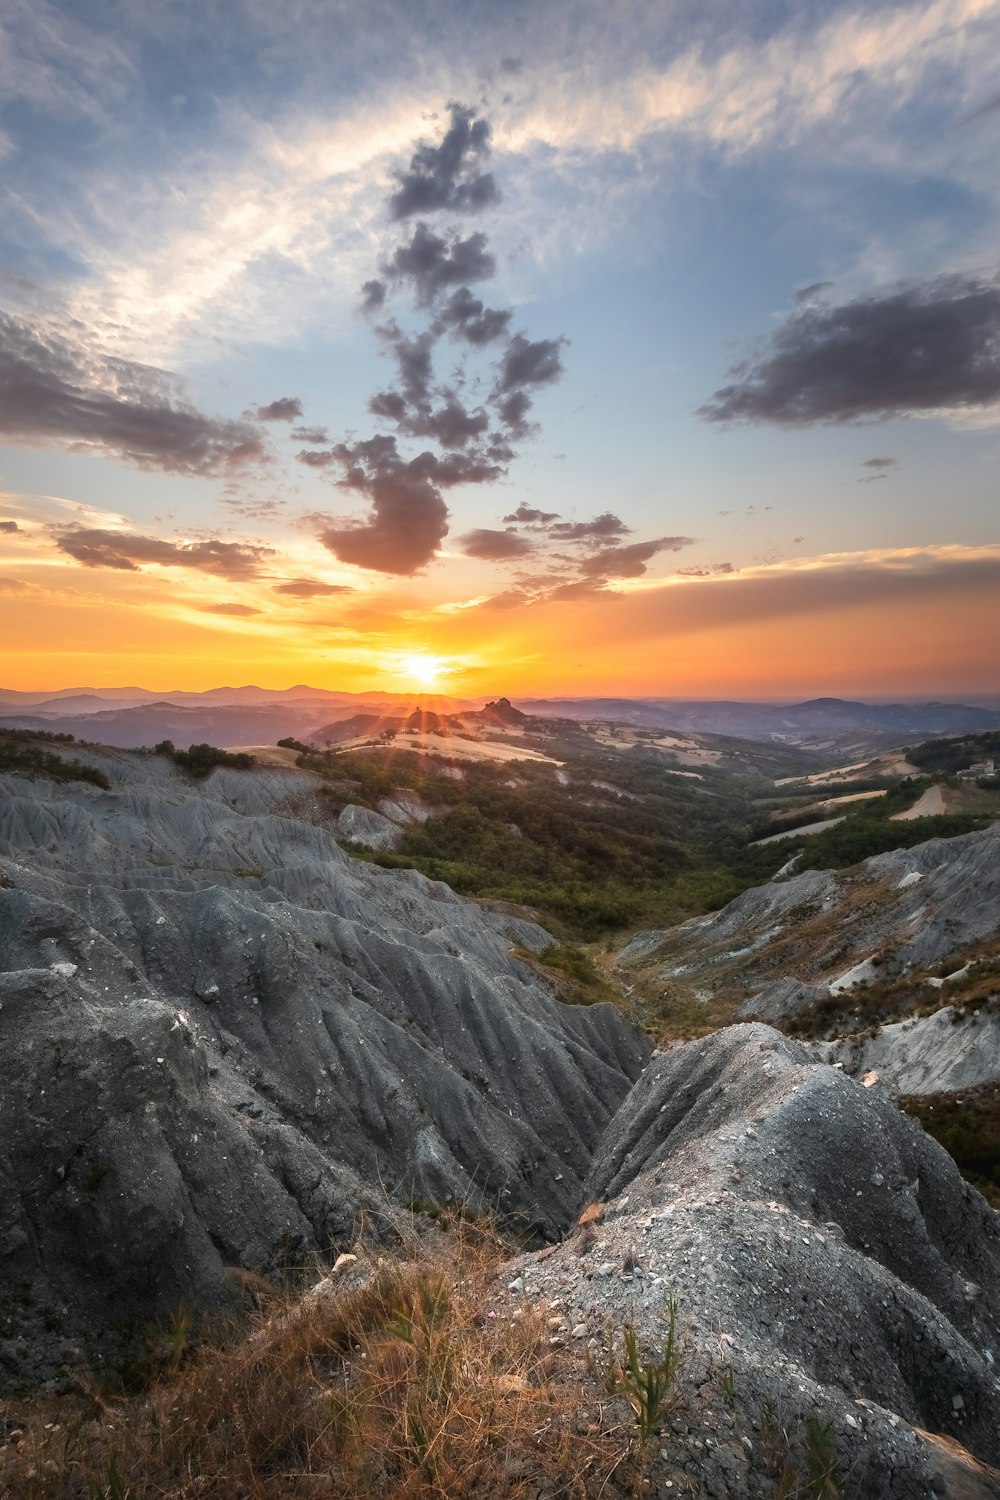 a sunset over a rocky landscape